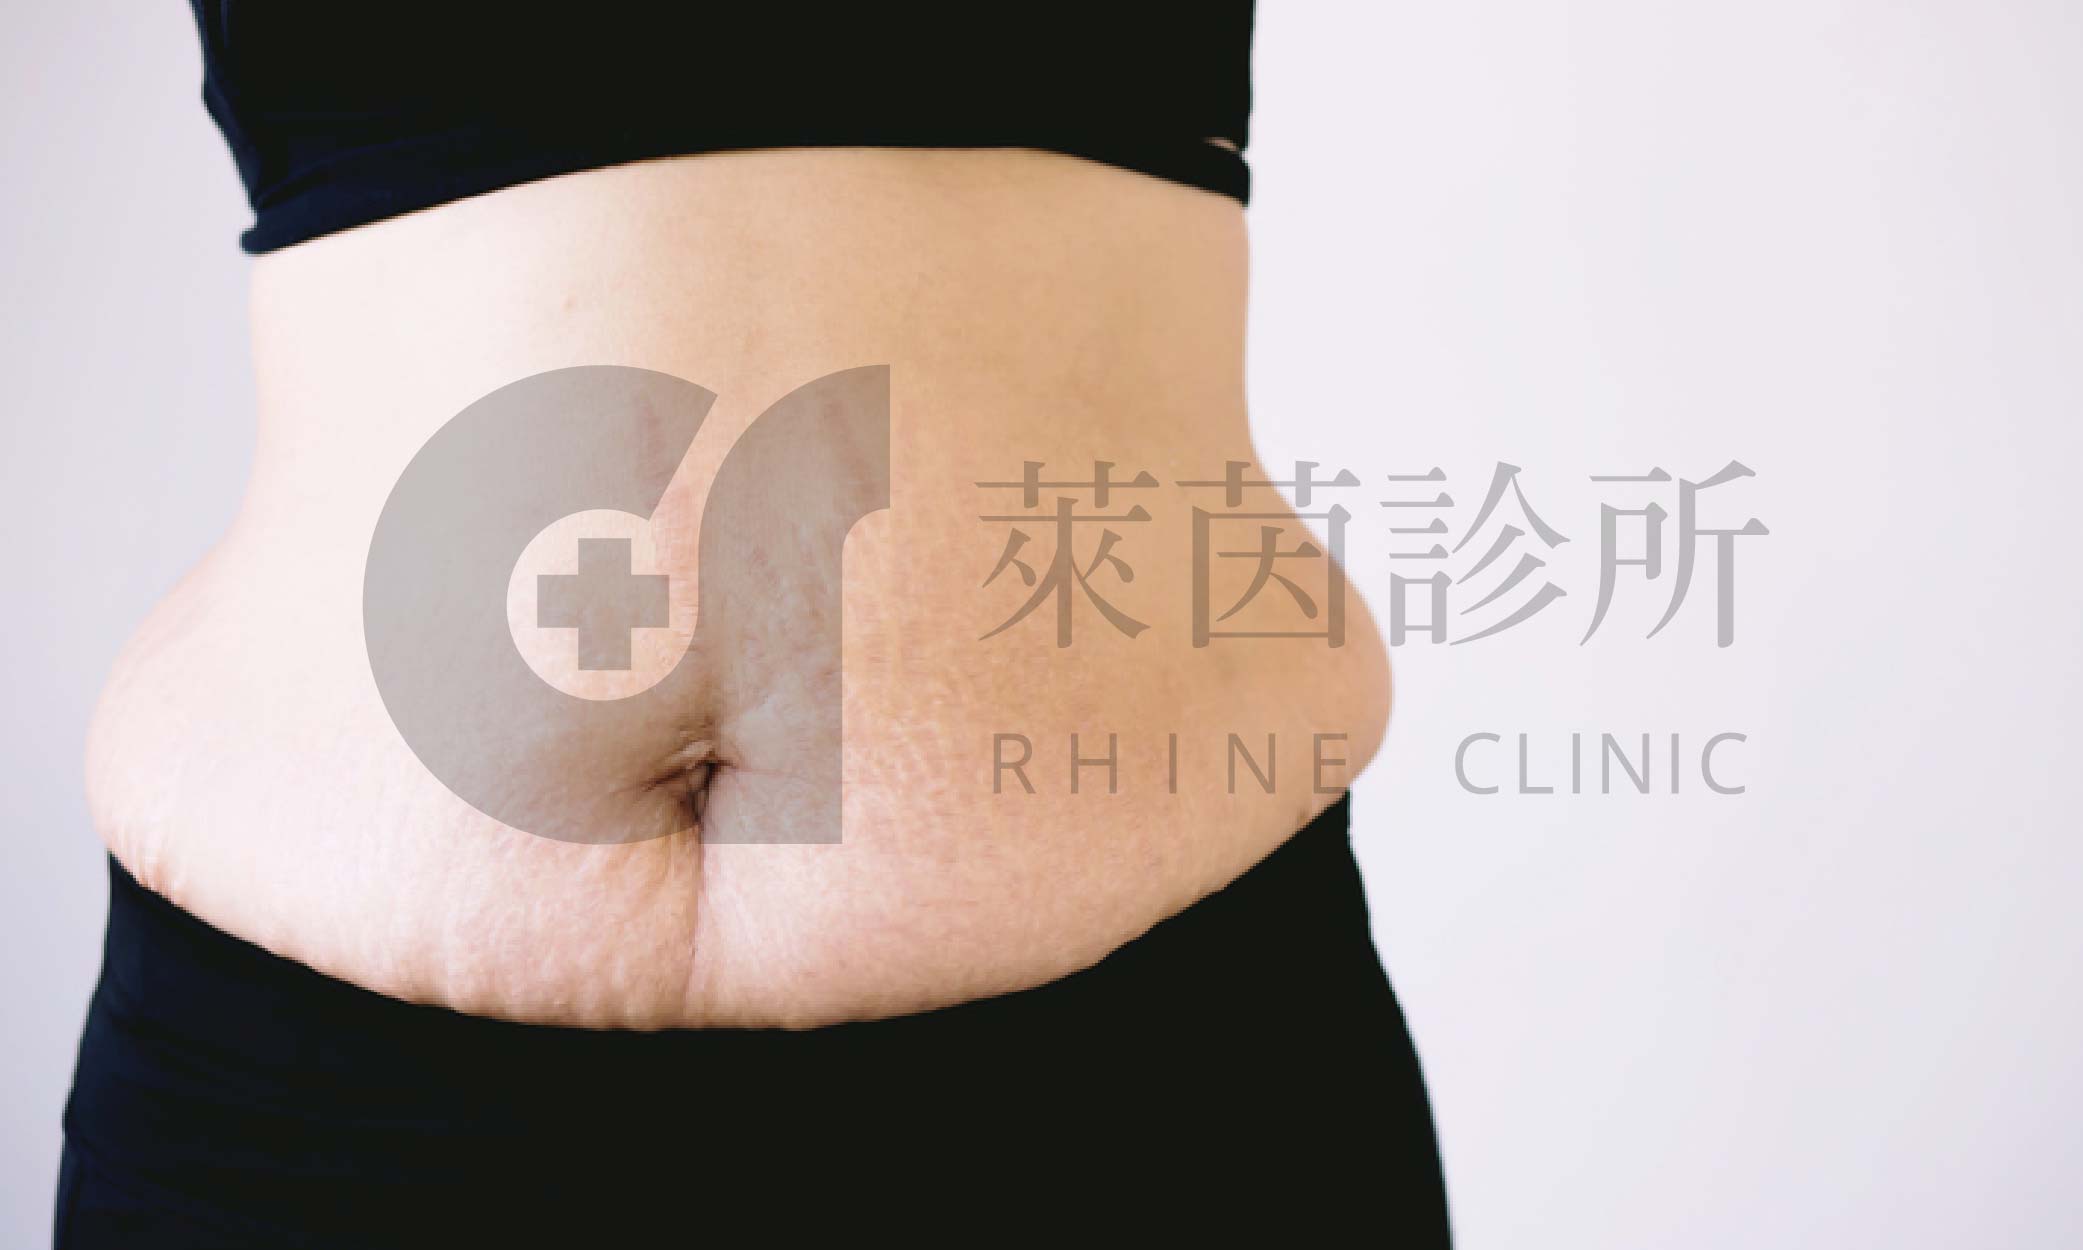 產後肚皮示意圖，小腹容易變得鬆弛且出現妊娠紋和脂肪堆積